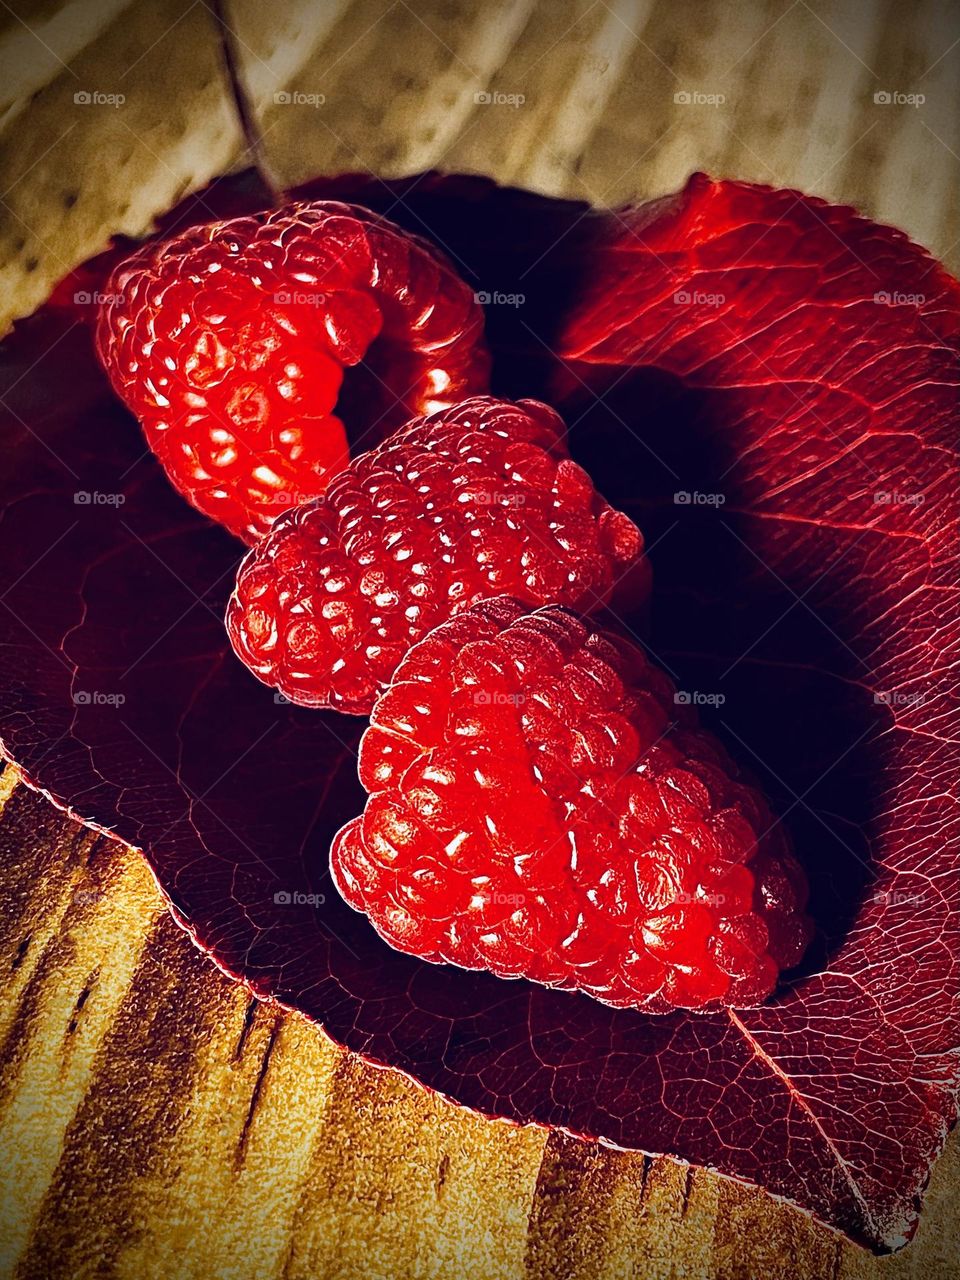 Triple Raspberries 